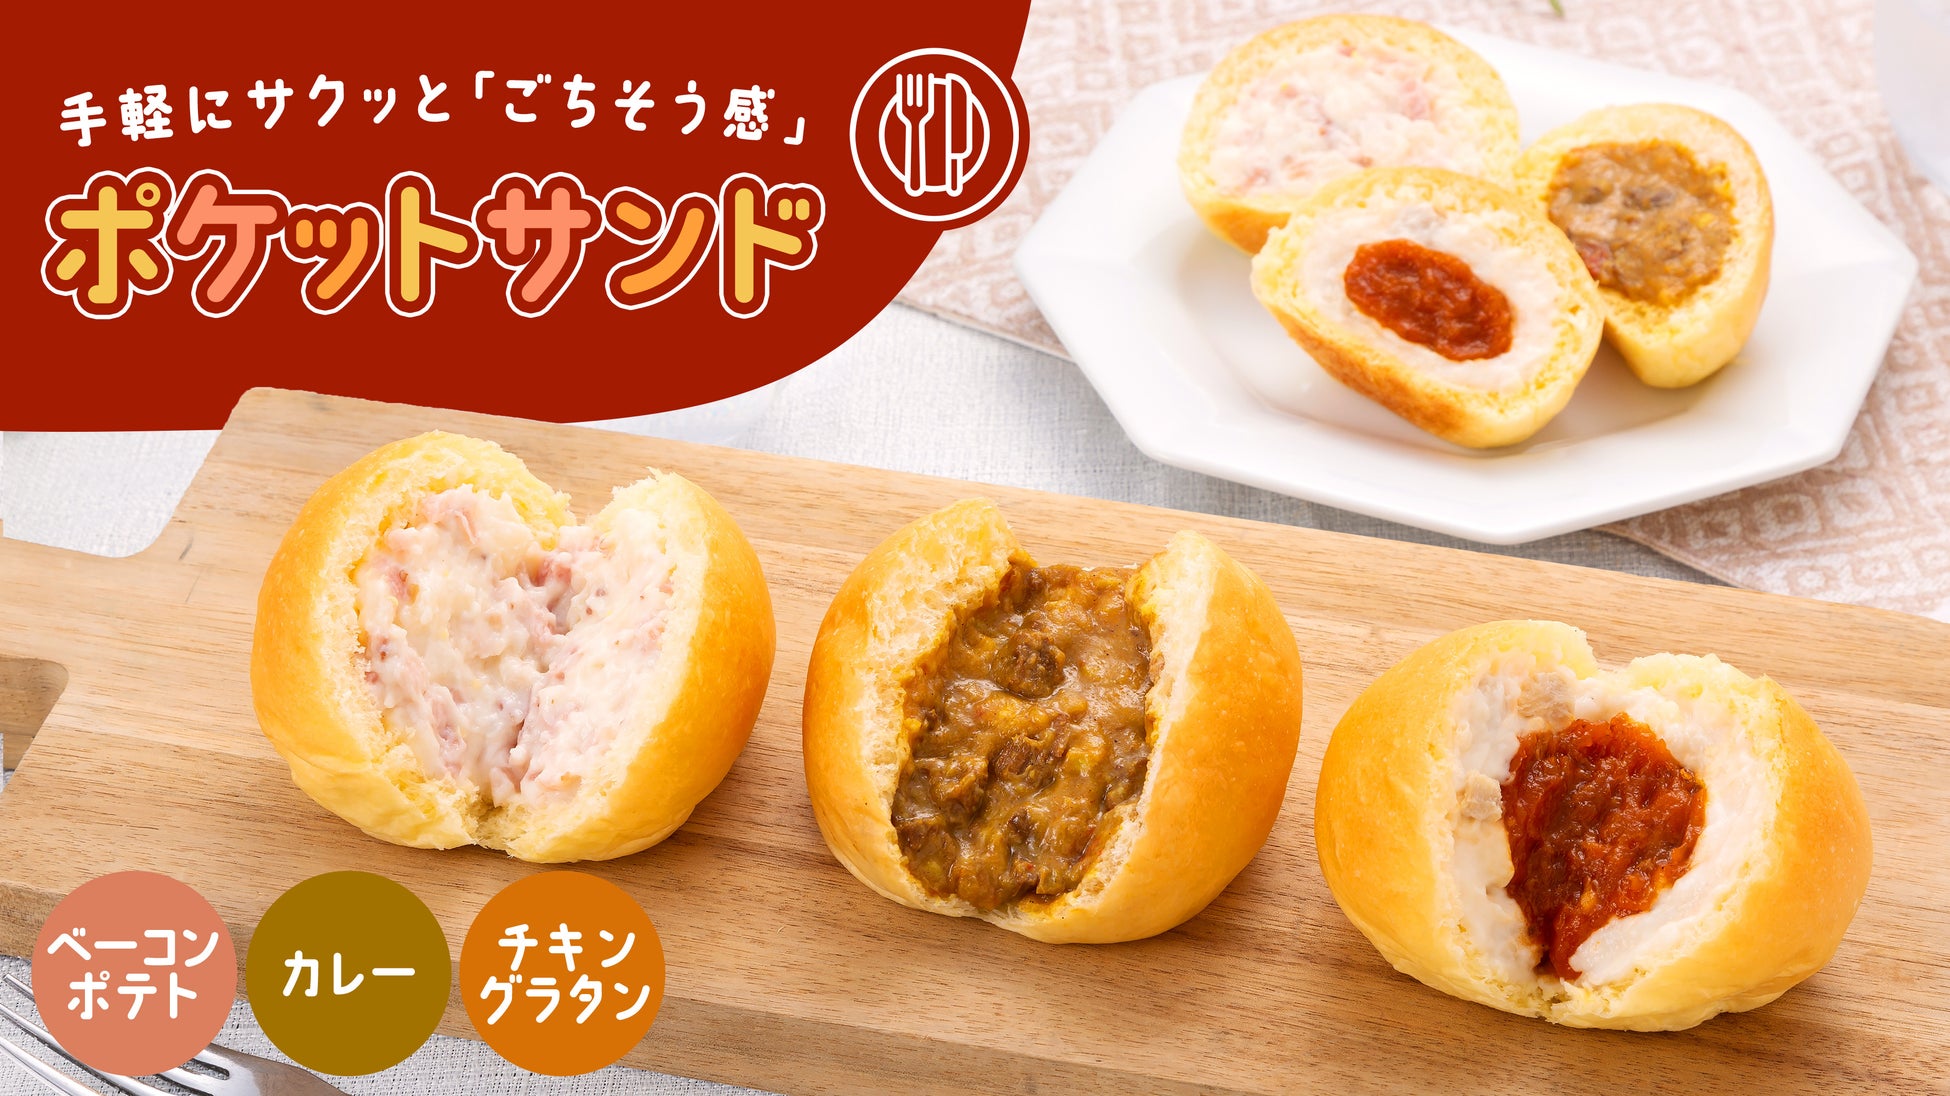 冷蔵惣菜デリバリーの「 つくりおき.jp 」、全キッチンで食品安全マネジメント規格「JFS-B」を取得